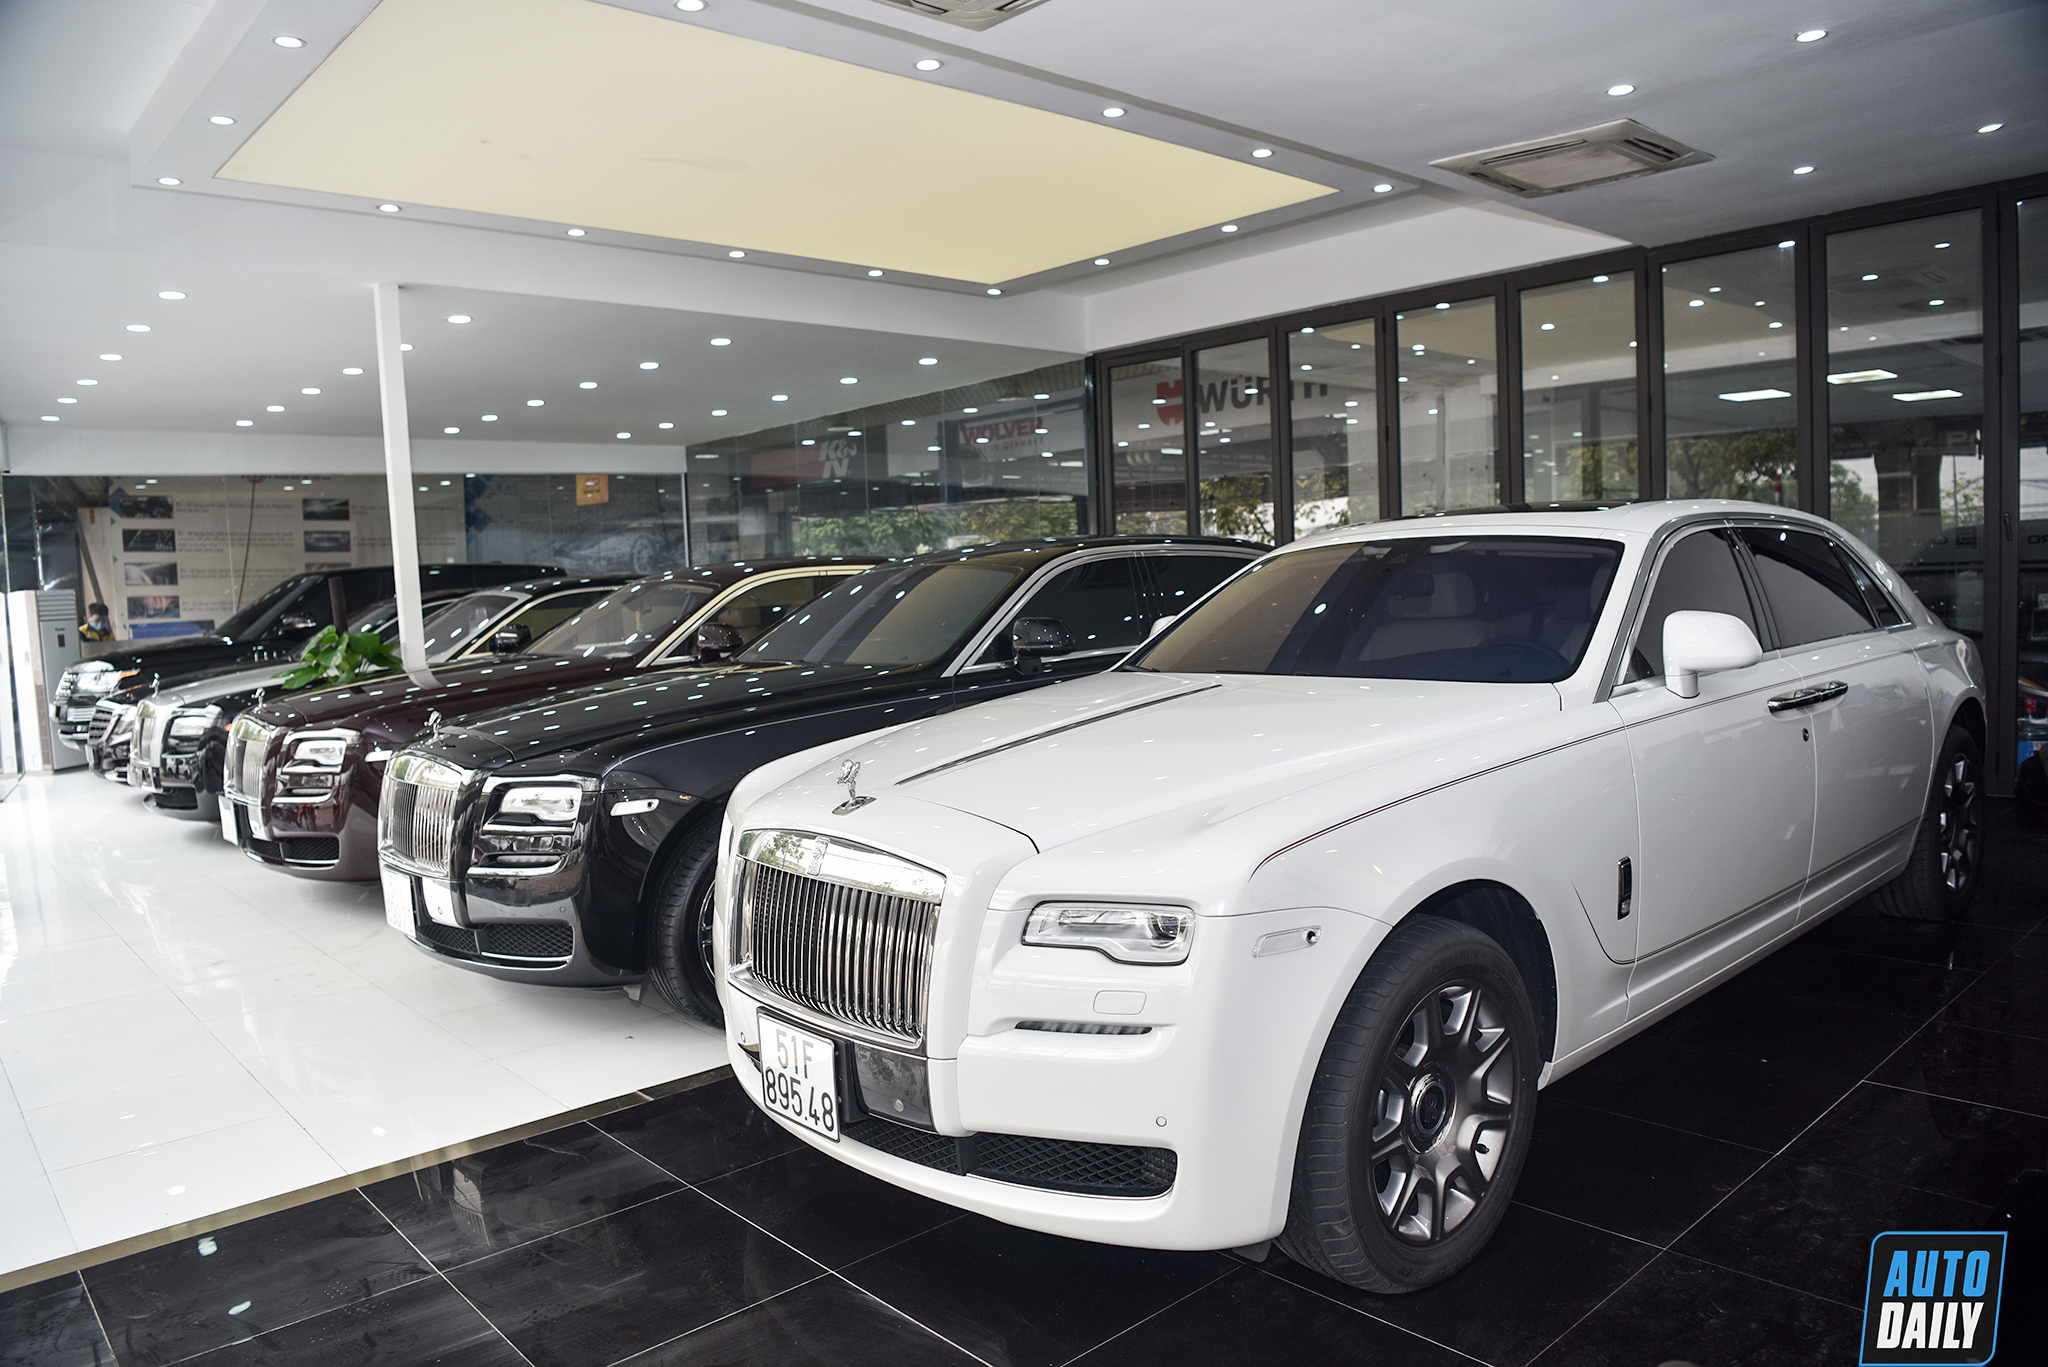 Rolls Royce Motor Cars chọn xong đại lý tại Việt Nam bỏ showroom tại Hà  Nội  Báo điện tử VnMedia  Tin nóng Việt Nam và thế giới